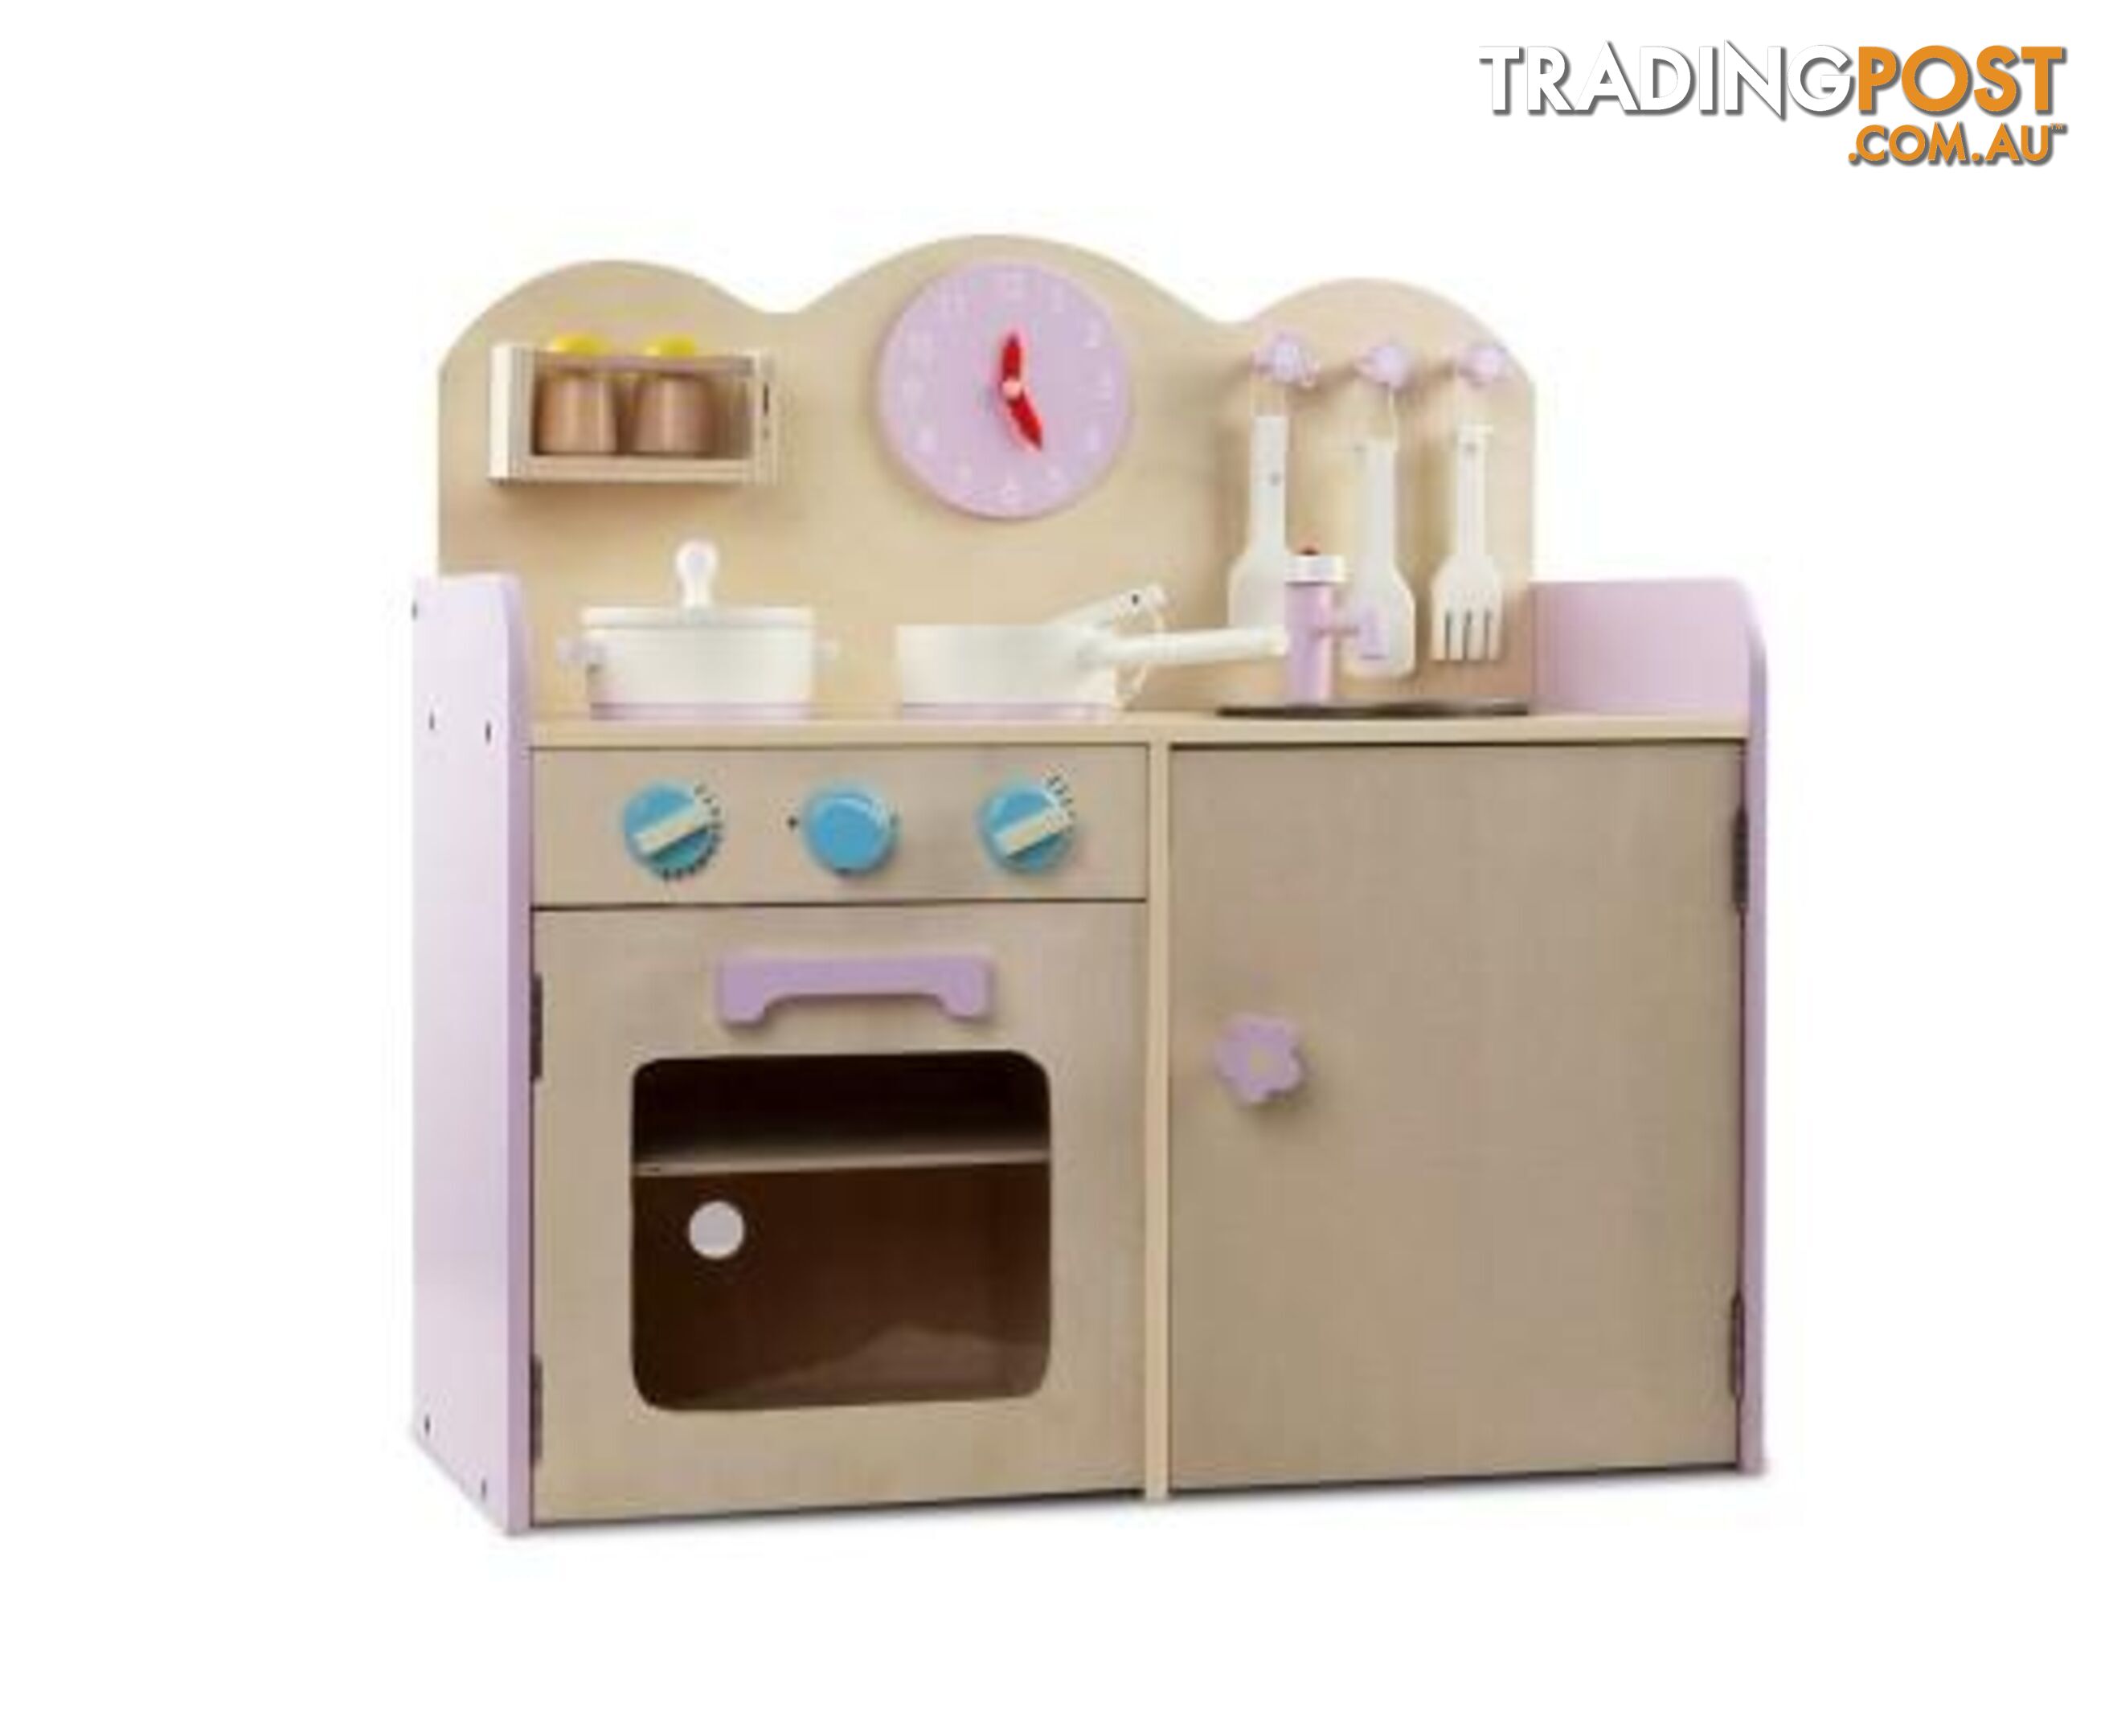 Wooden Kitchen Set - 7 Piece - Keezi - 4326500261960